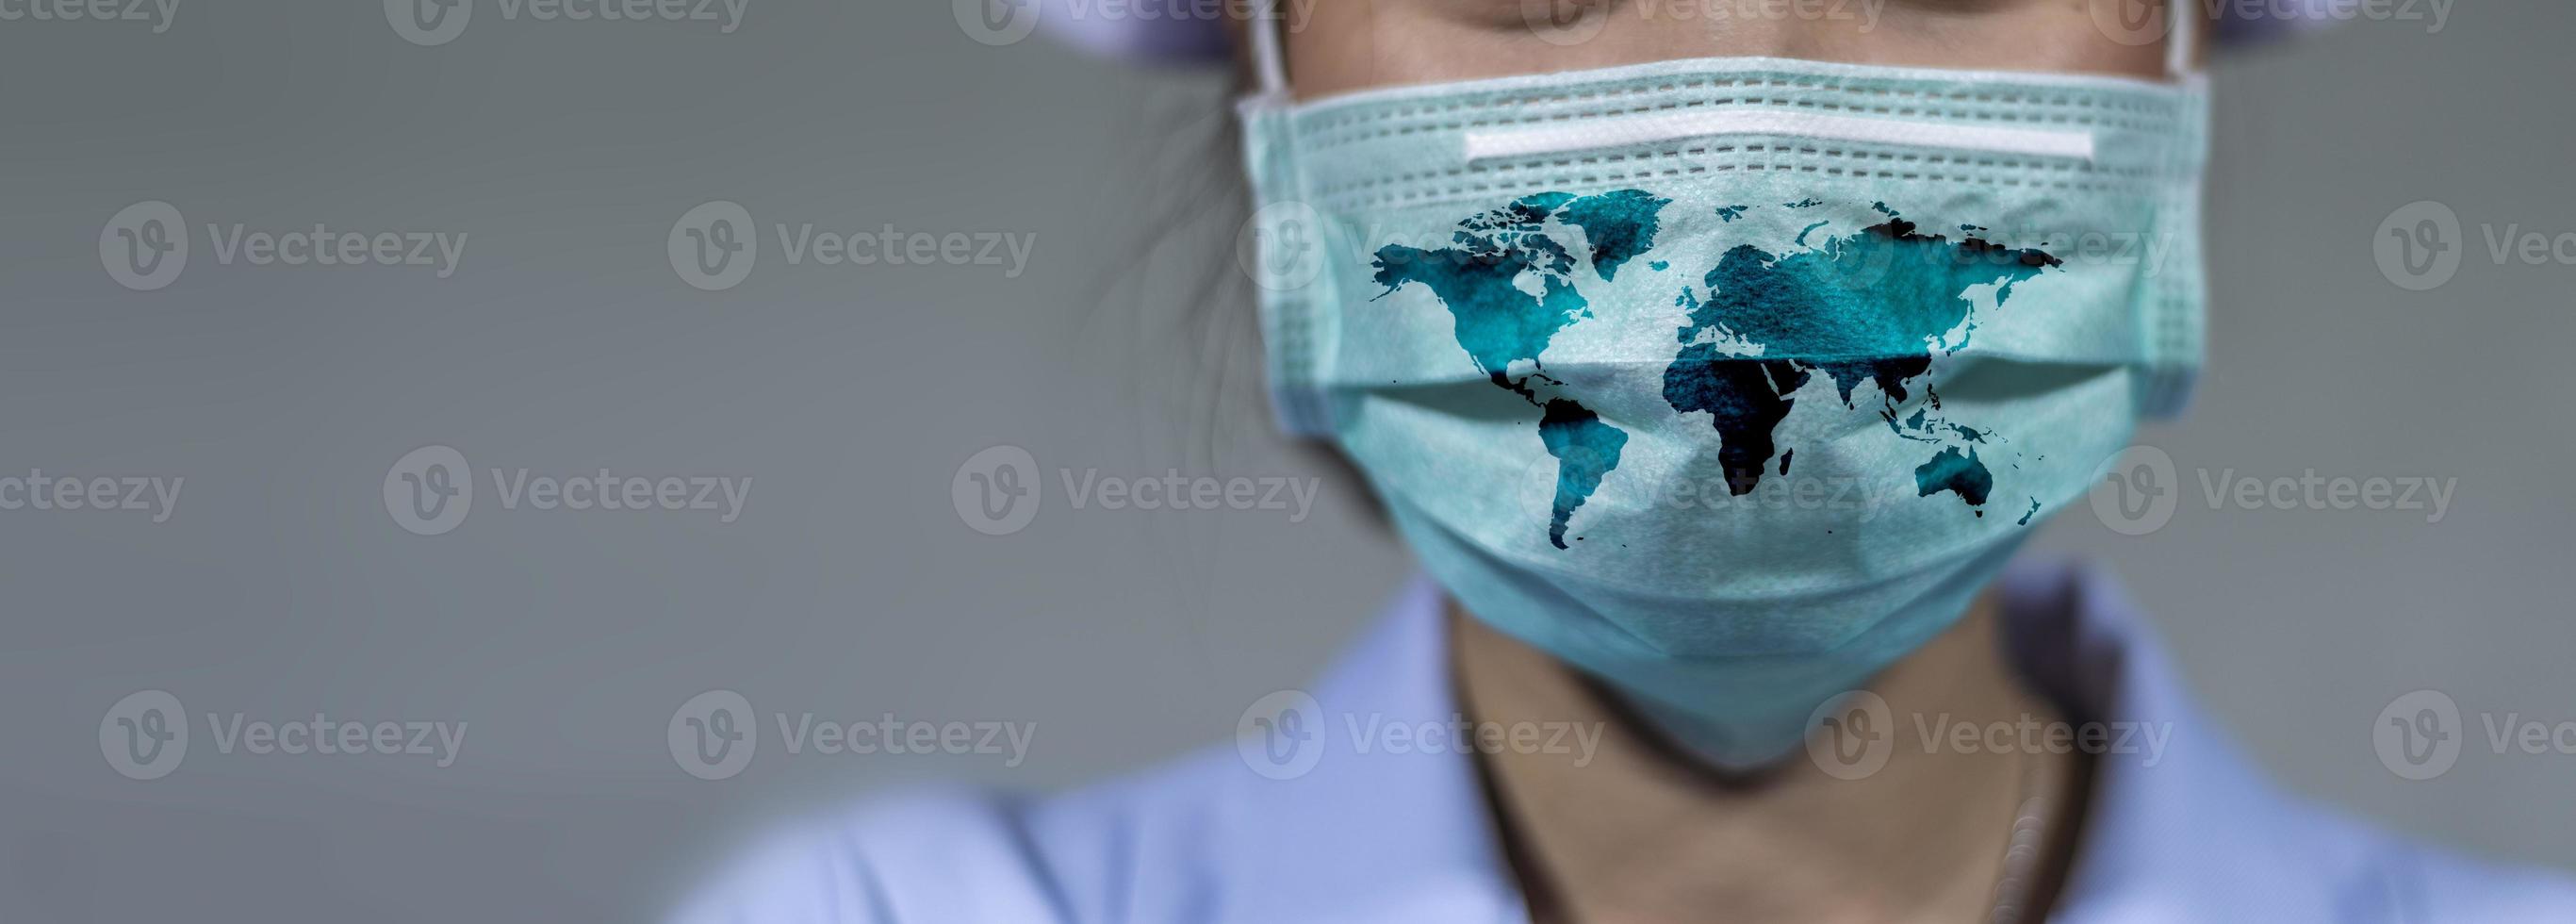 protezione antivirus covid 19 il mondo indossa una maschera per combattere il virus corona. il concetto di combattere i virus in tutto il mondo foto